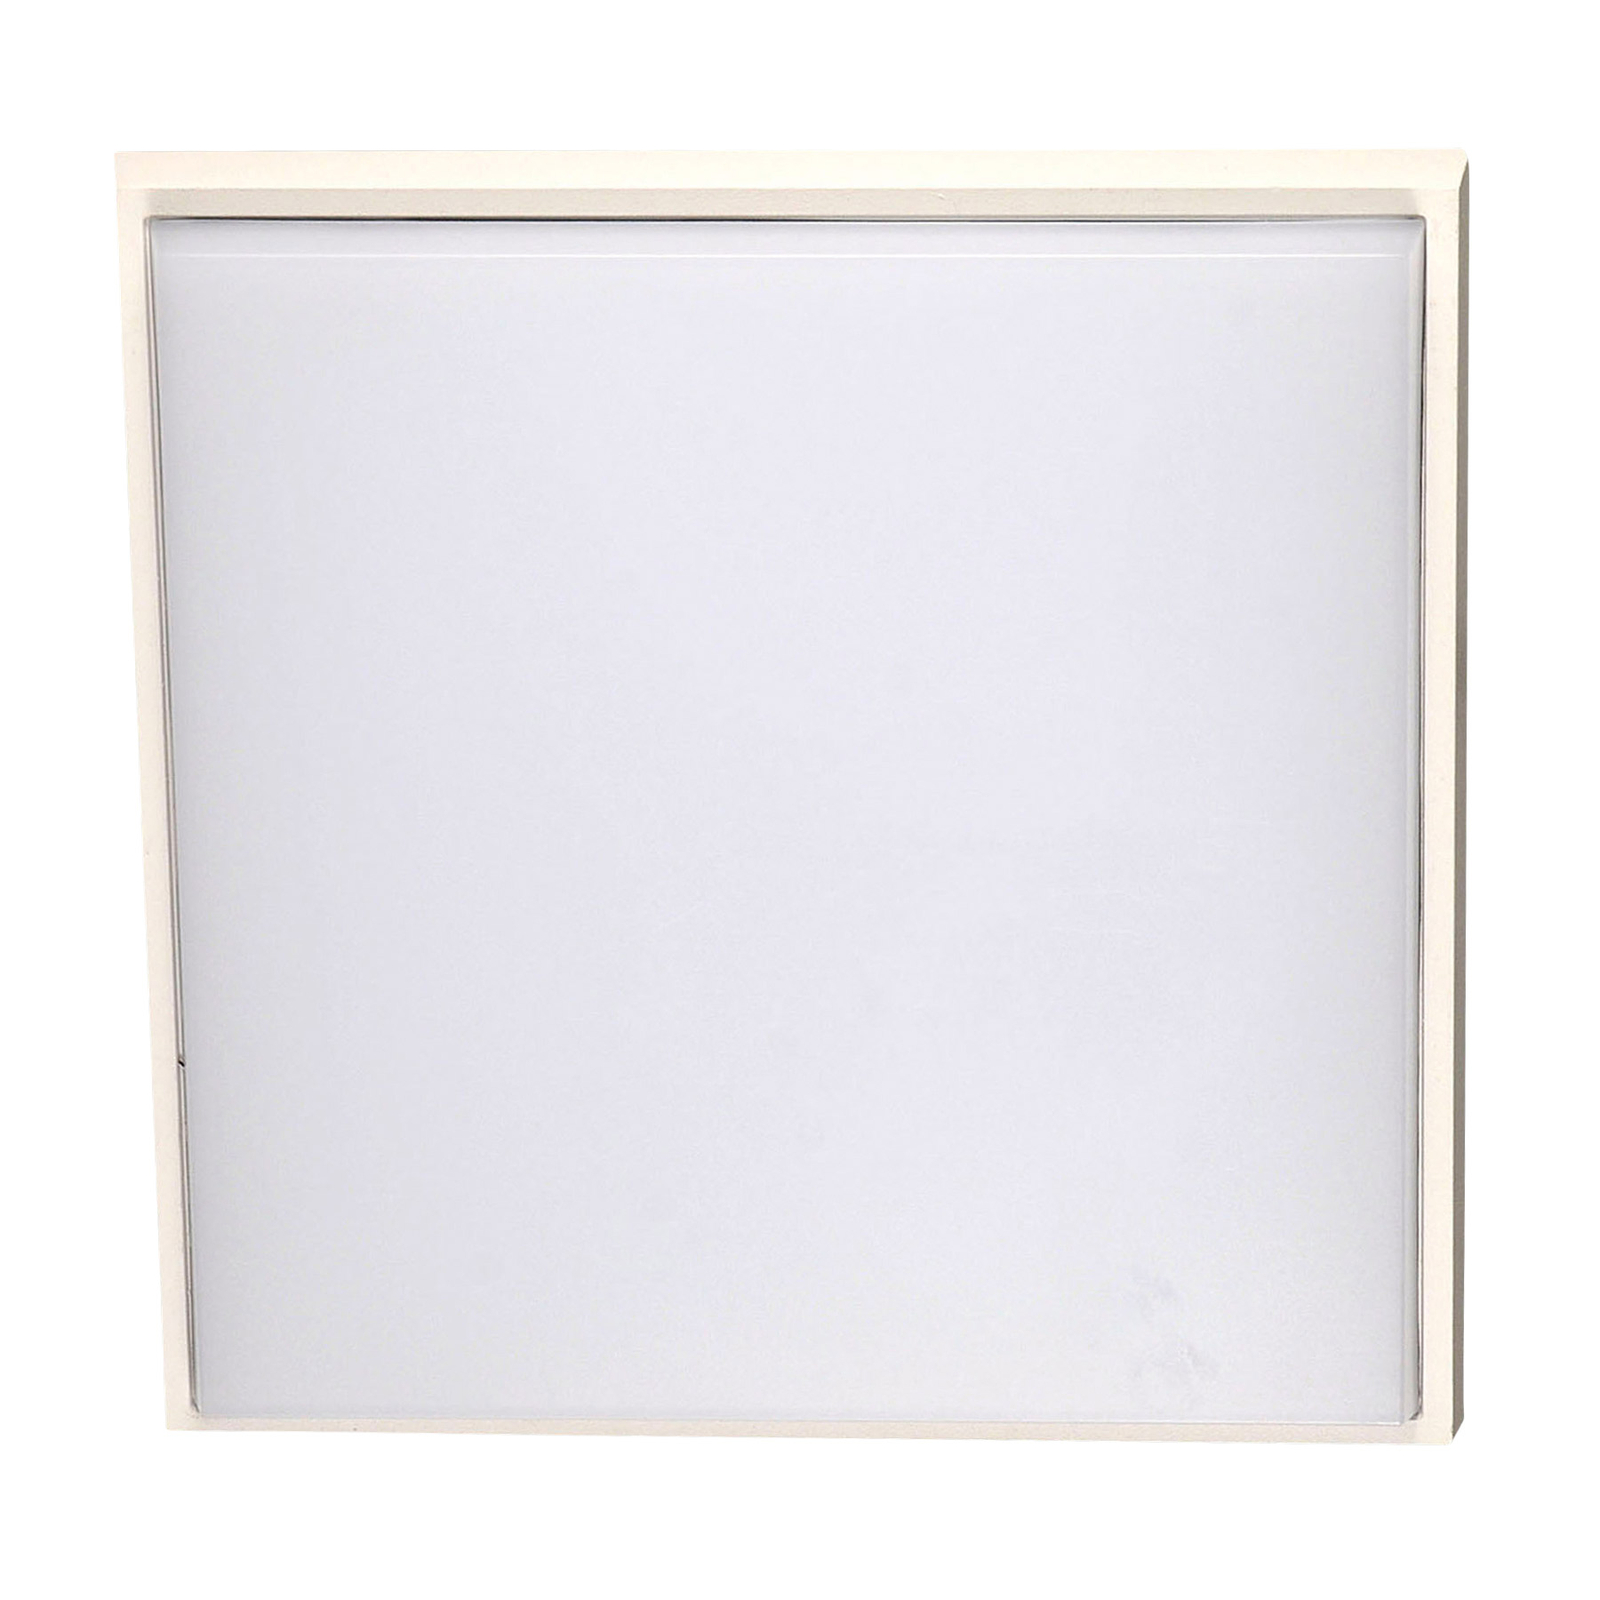 LED-Außendeckenleuchte Desdy, 30x30 cm, weiß